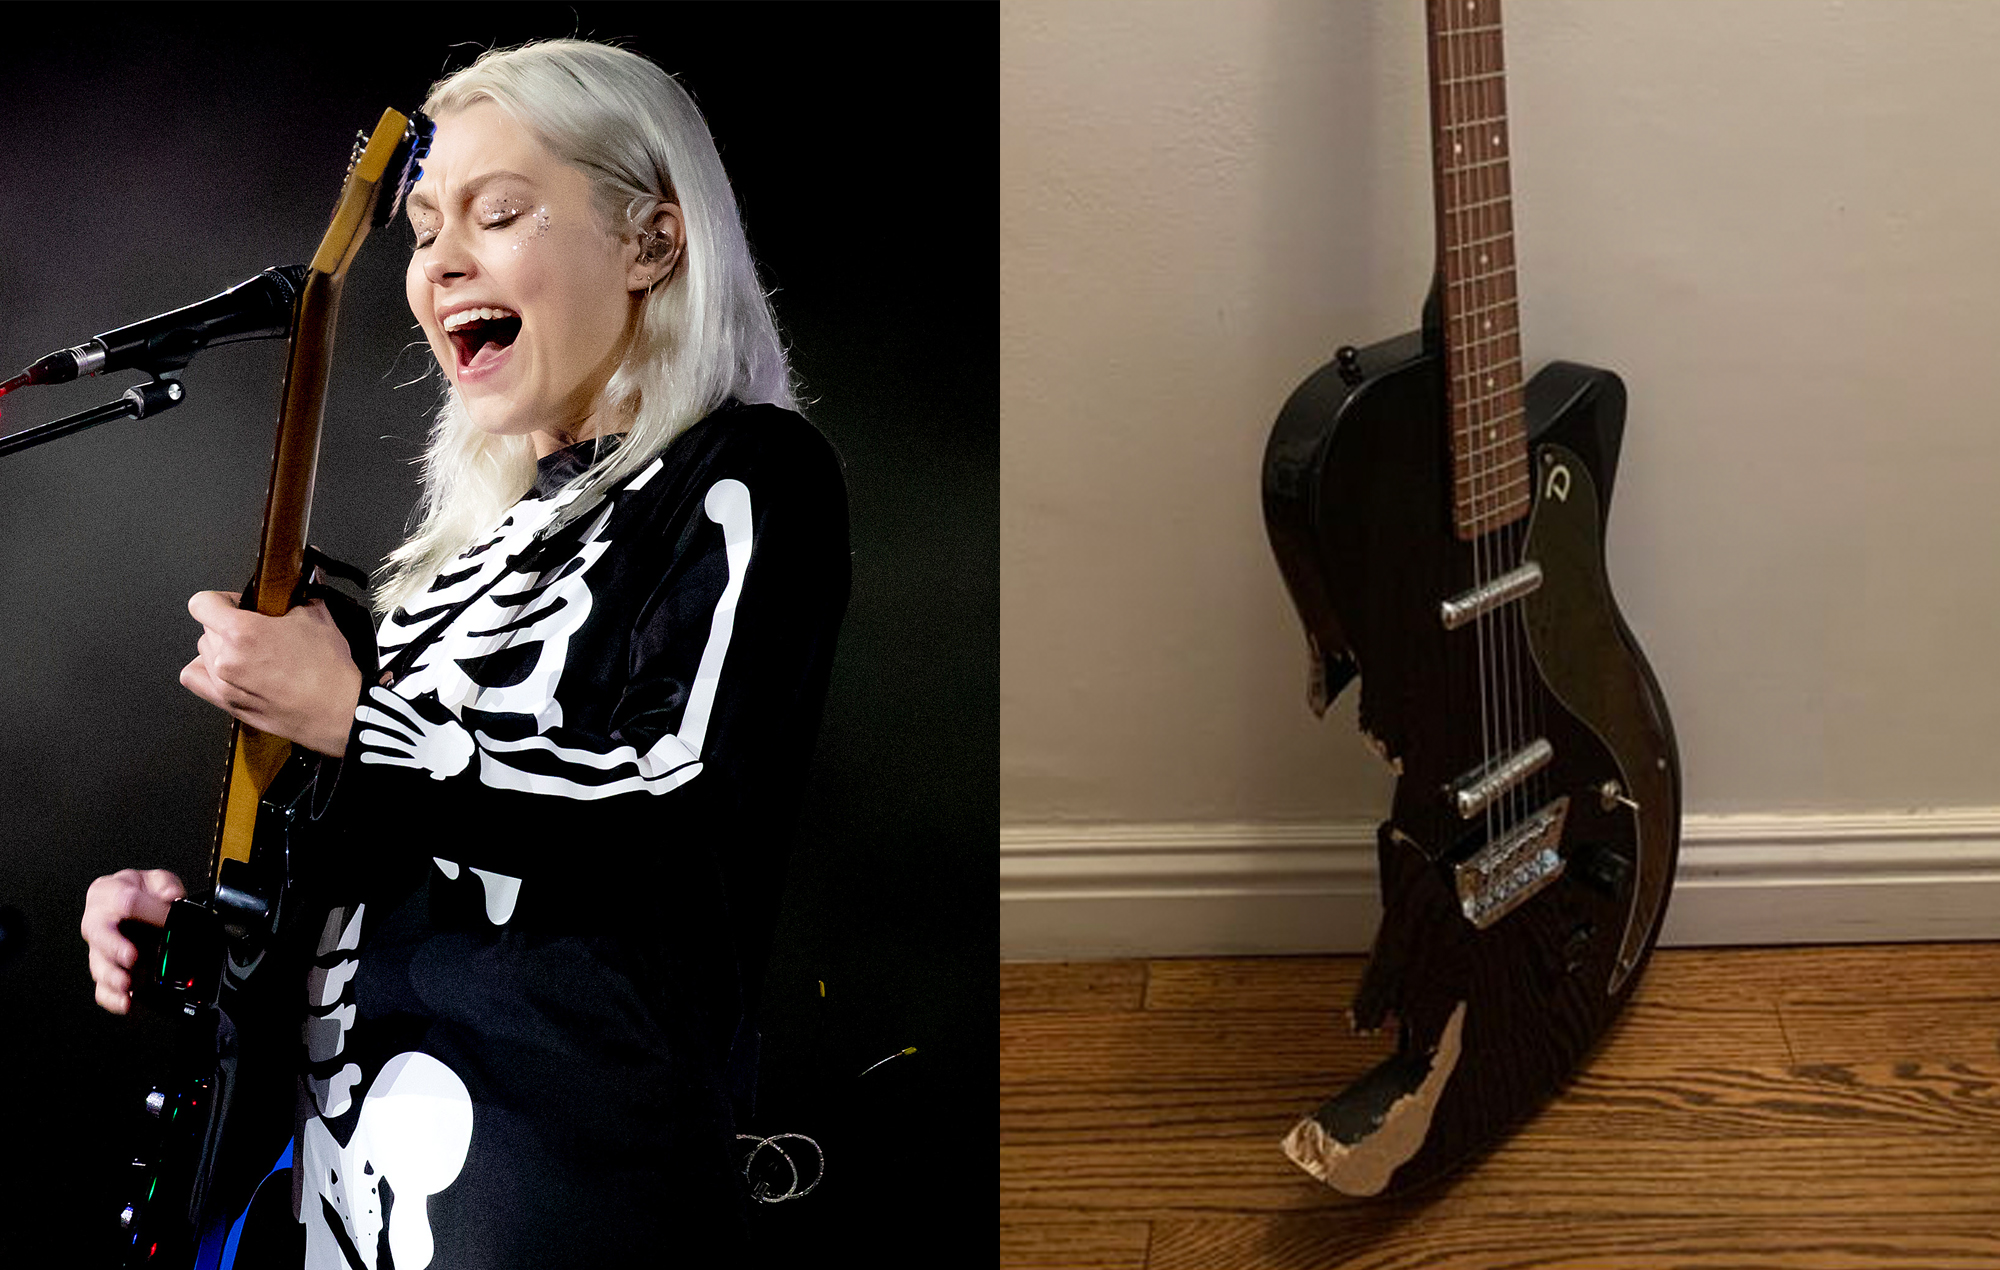 La guitarra destrozada de Phoebe Bridgers en 'Saturday Night Live' se vende por más de 100.000 dólares